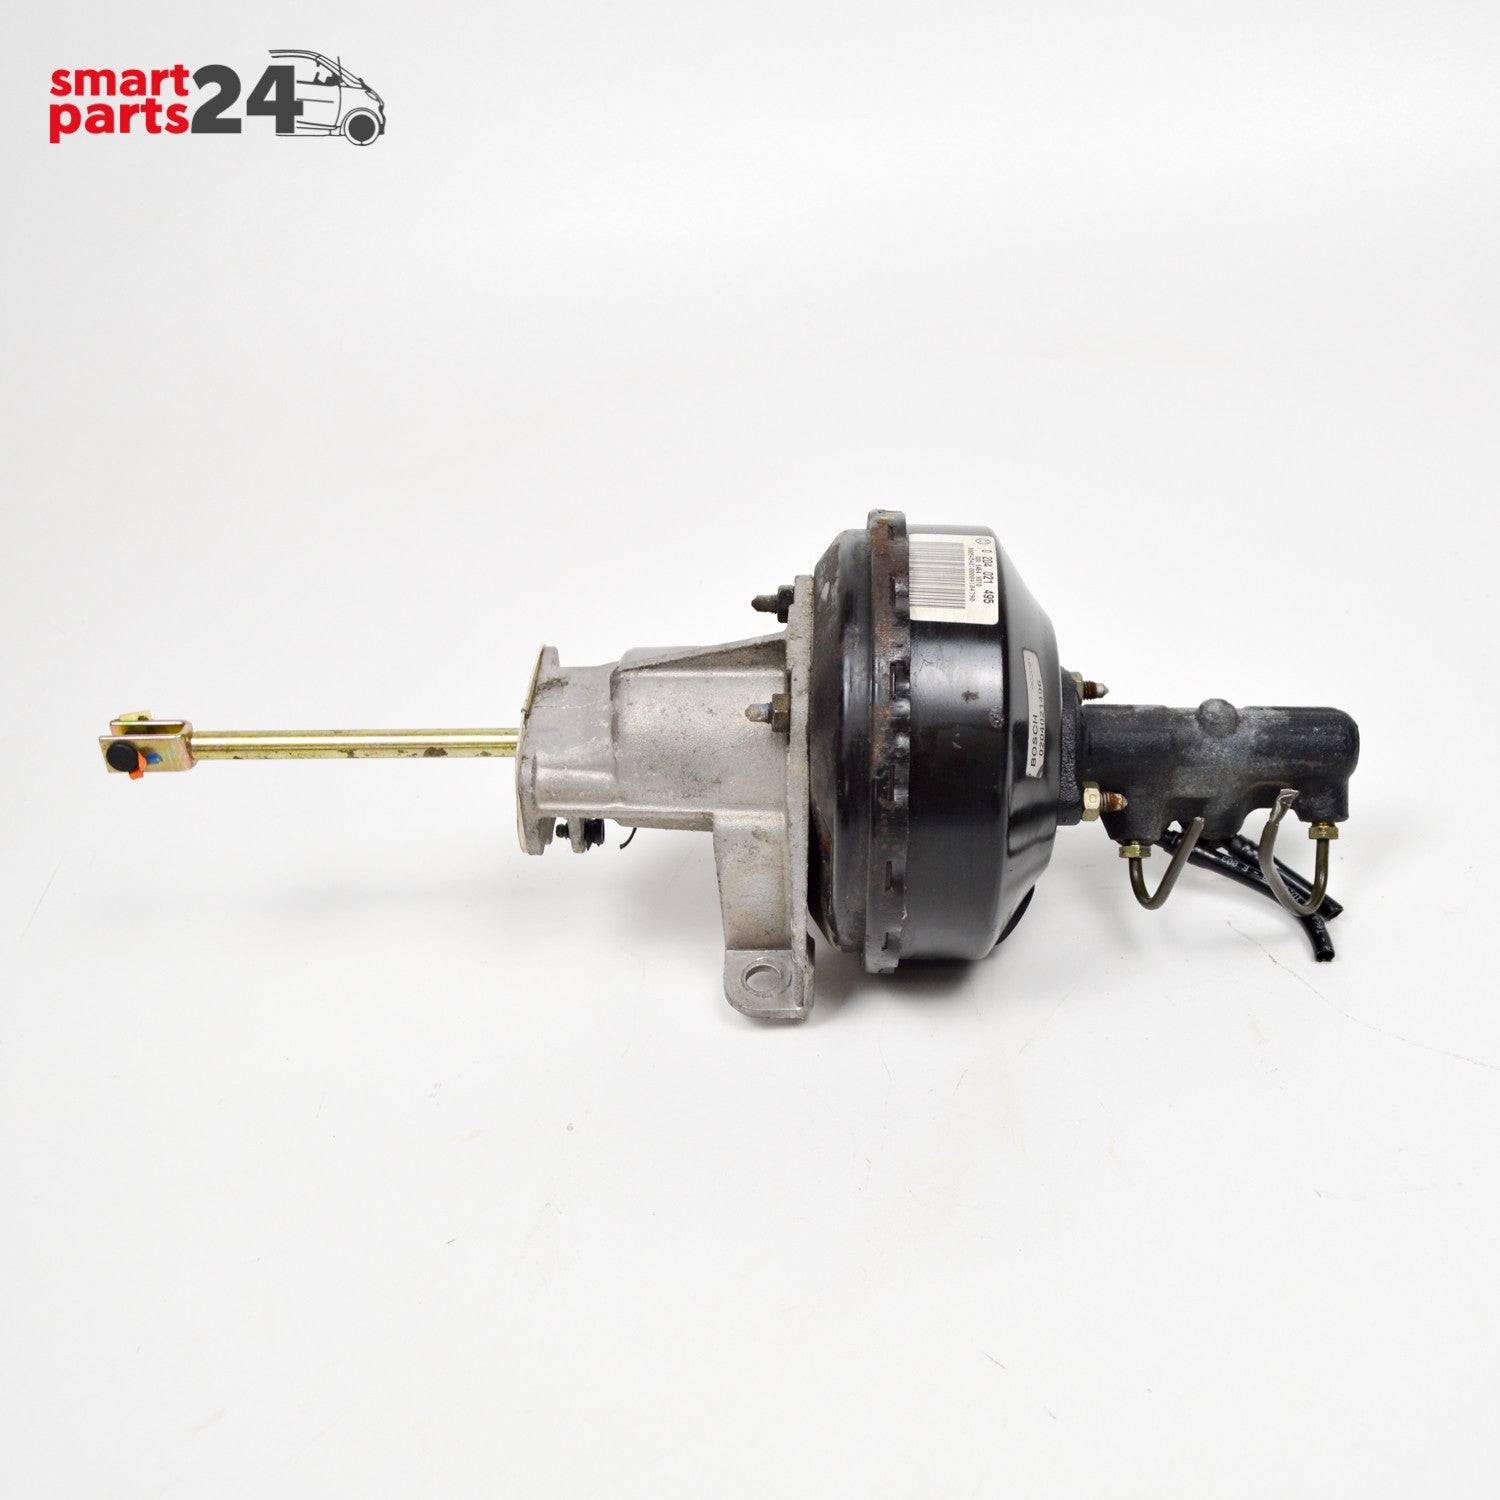 Smart Fortwo 450 brake booster master cylinder Q0005454V006 / V010 (used)